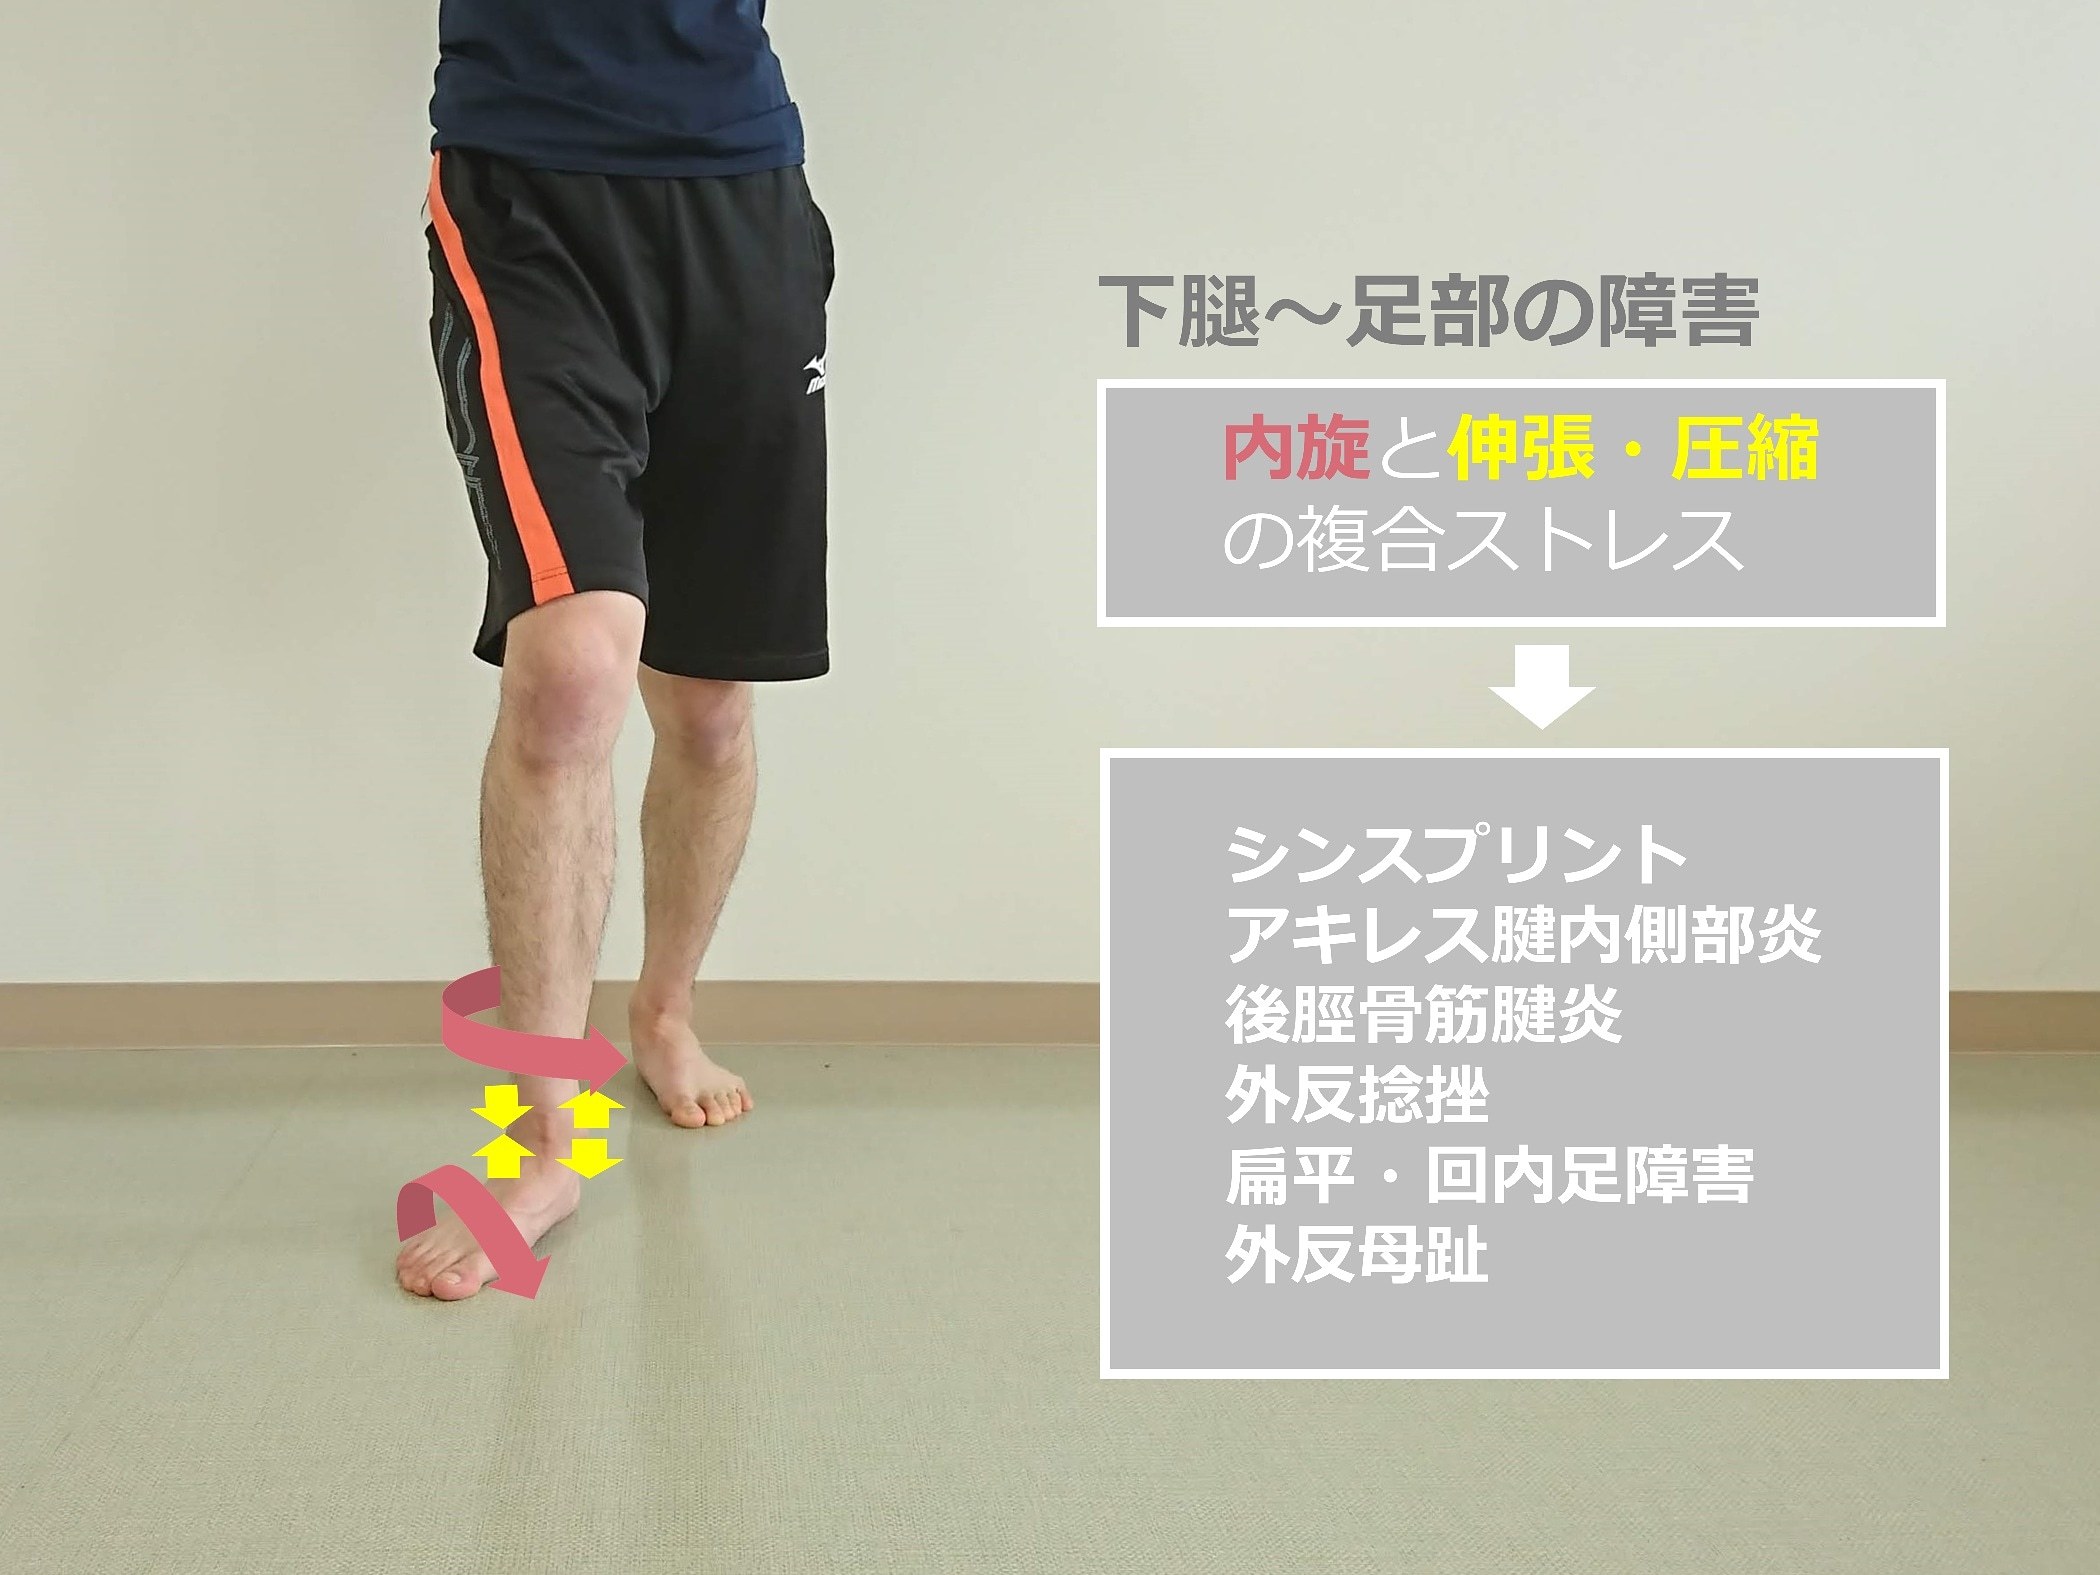 Knee-in&Toe-out(KITO)により生じる下腿から足部へのメカニカルストレスとスポーツ外傷・障害_b0329026_22393188.jpg